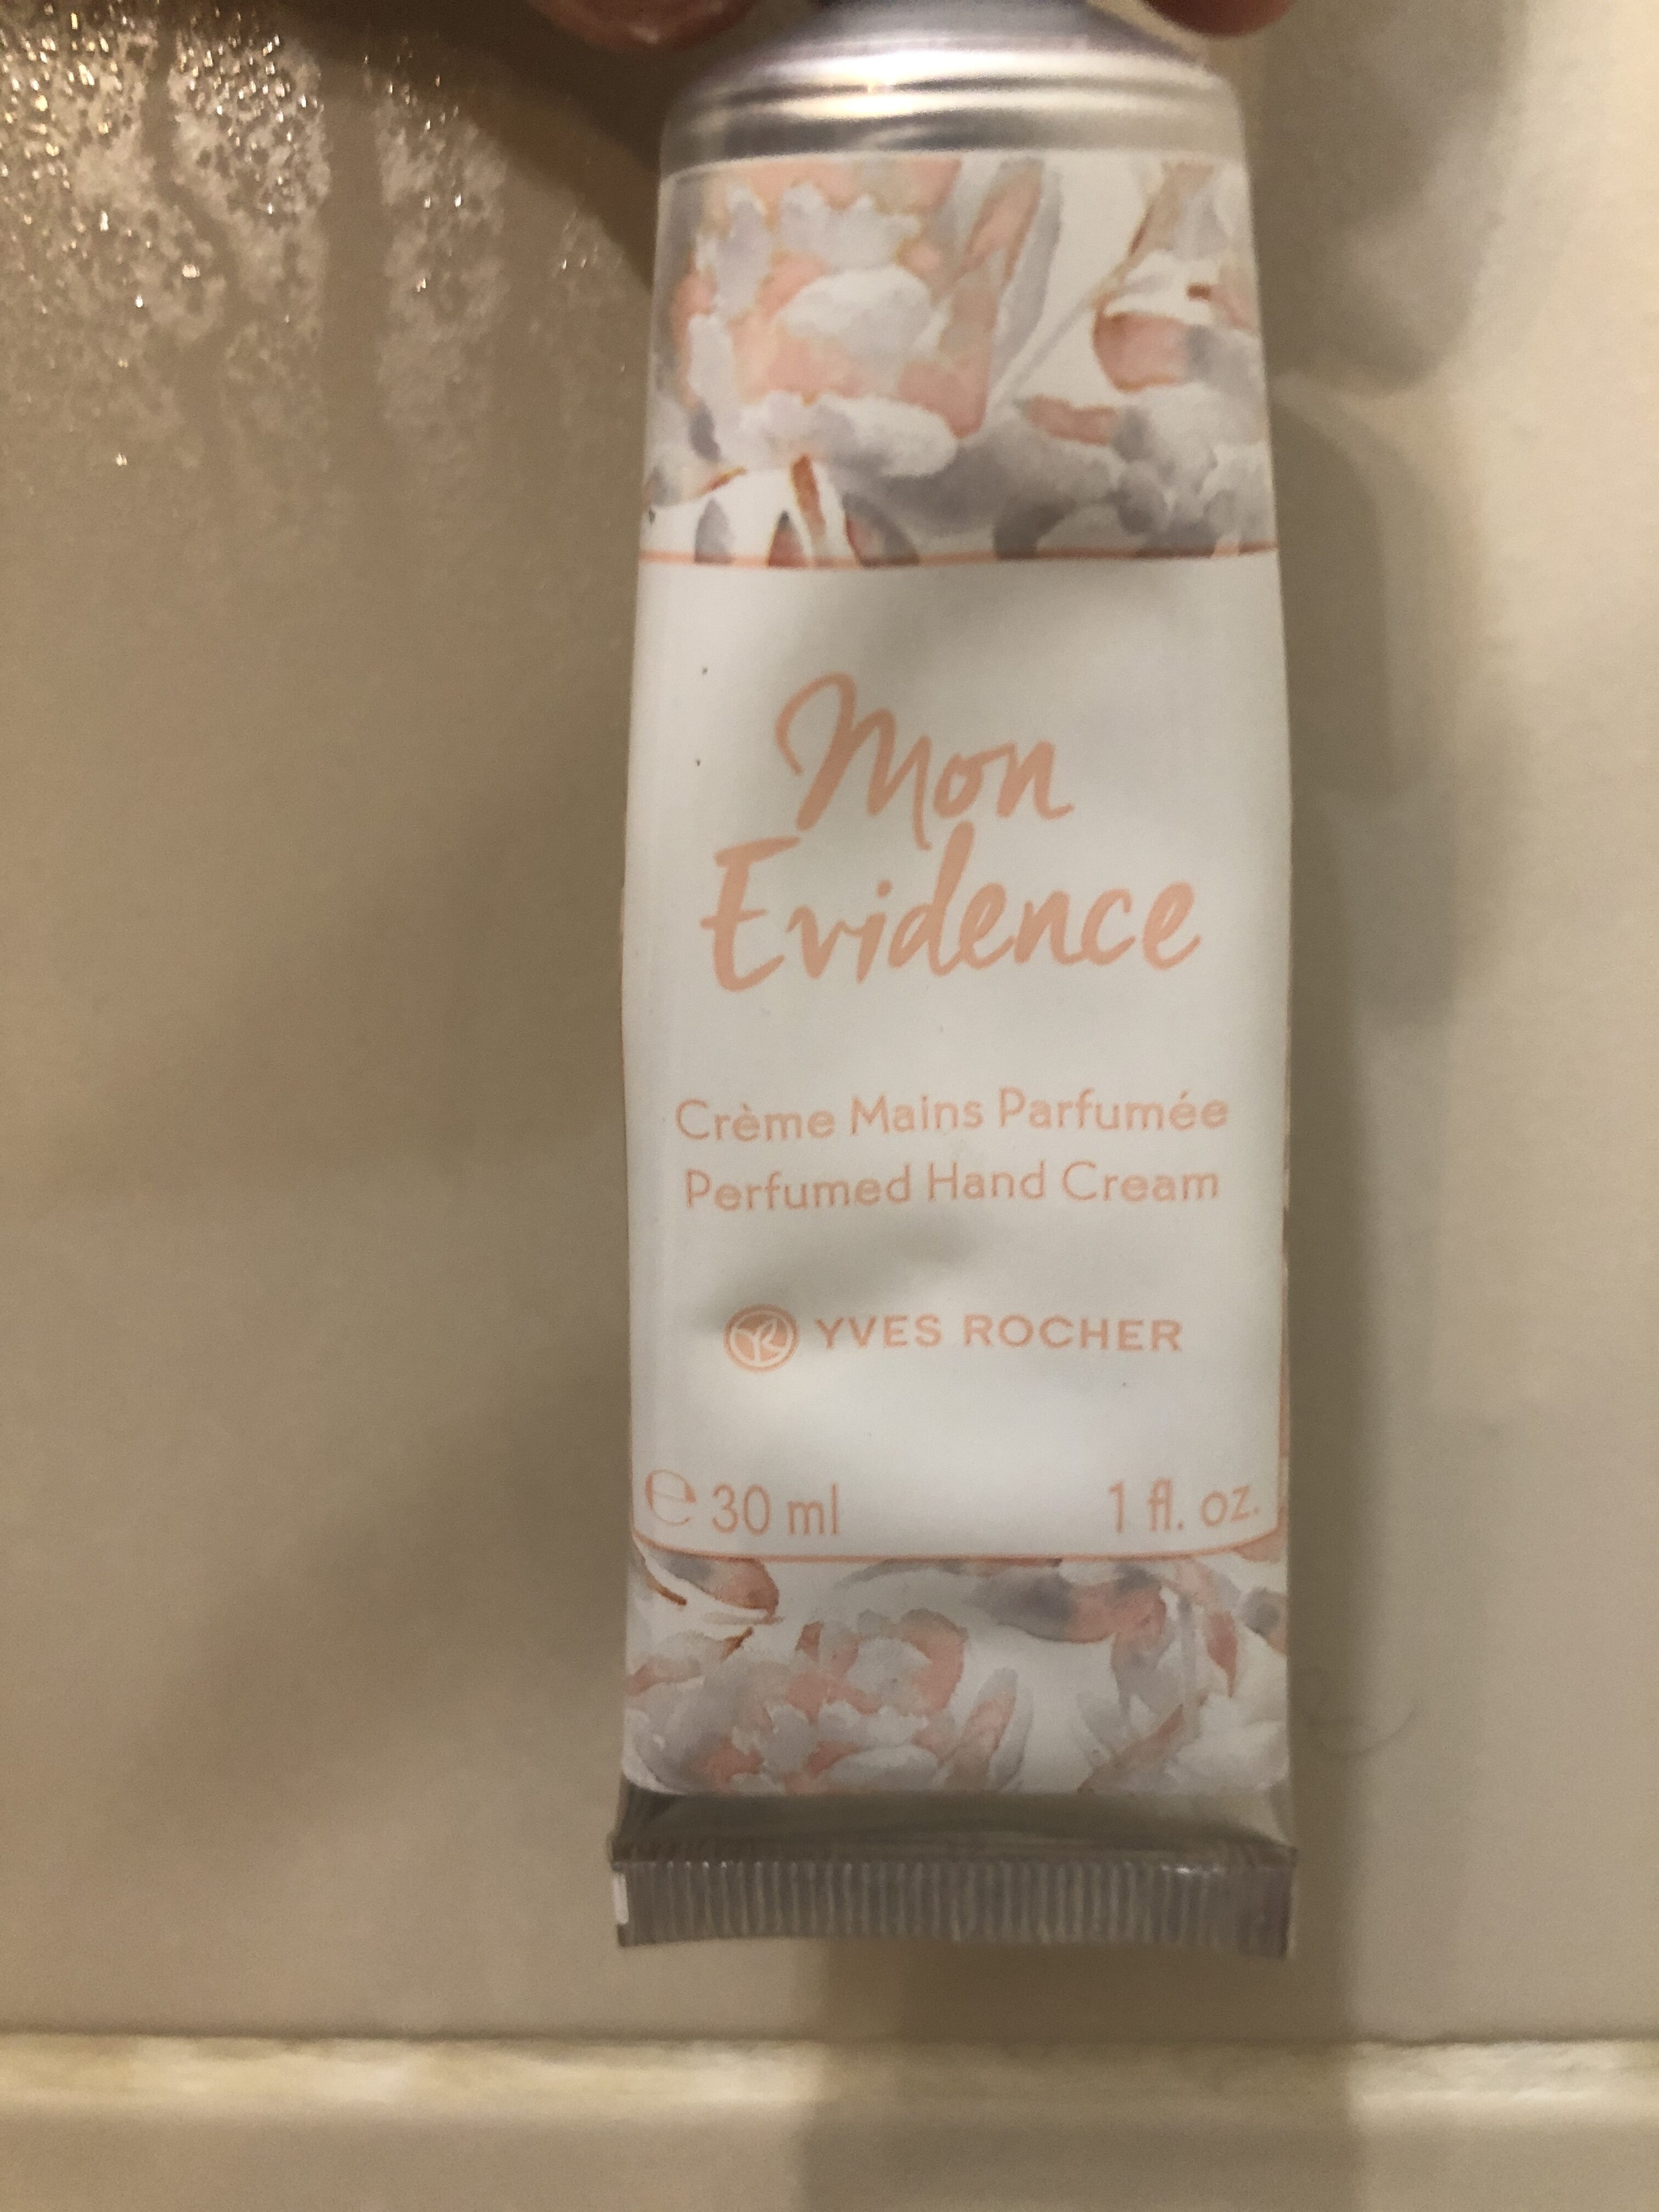 Crème mains parfumée - Product - fr